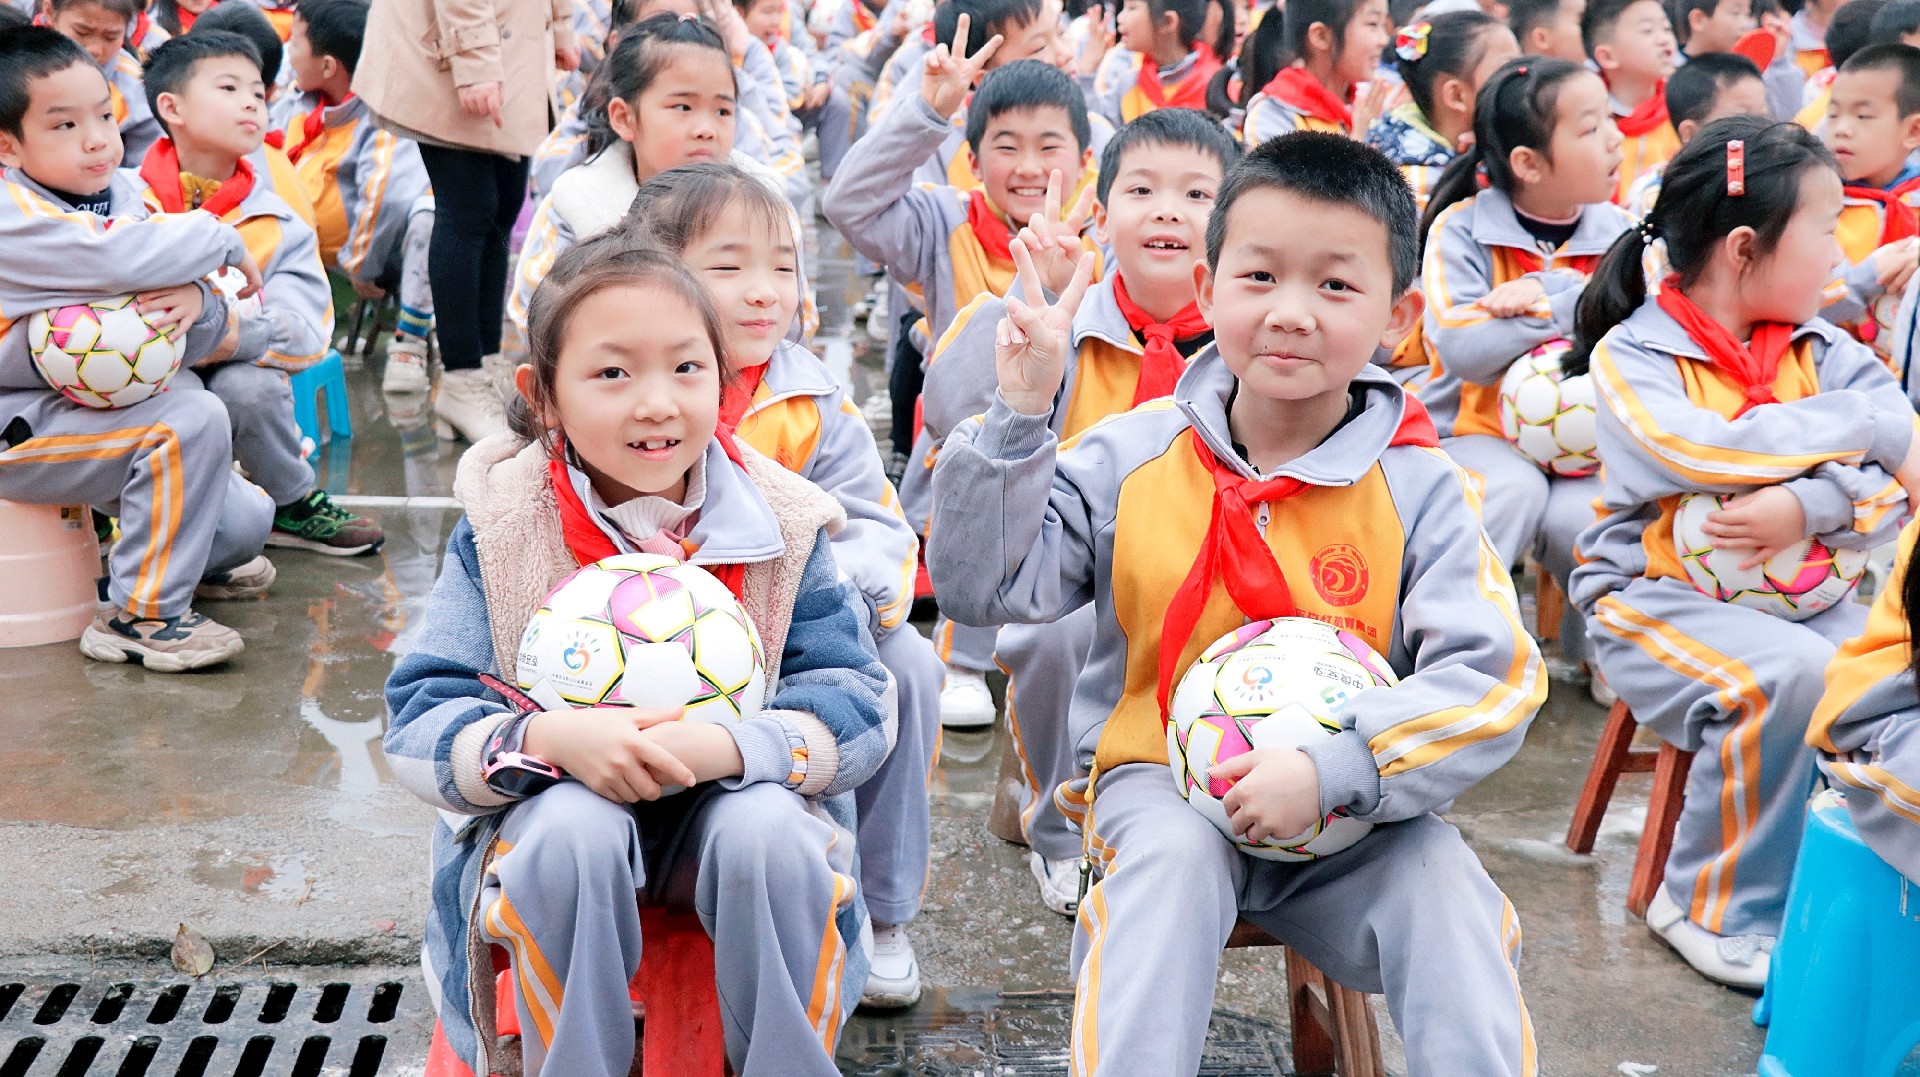 孩子们领到足球后开心的笑脸.JPG